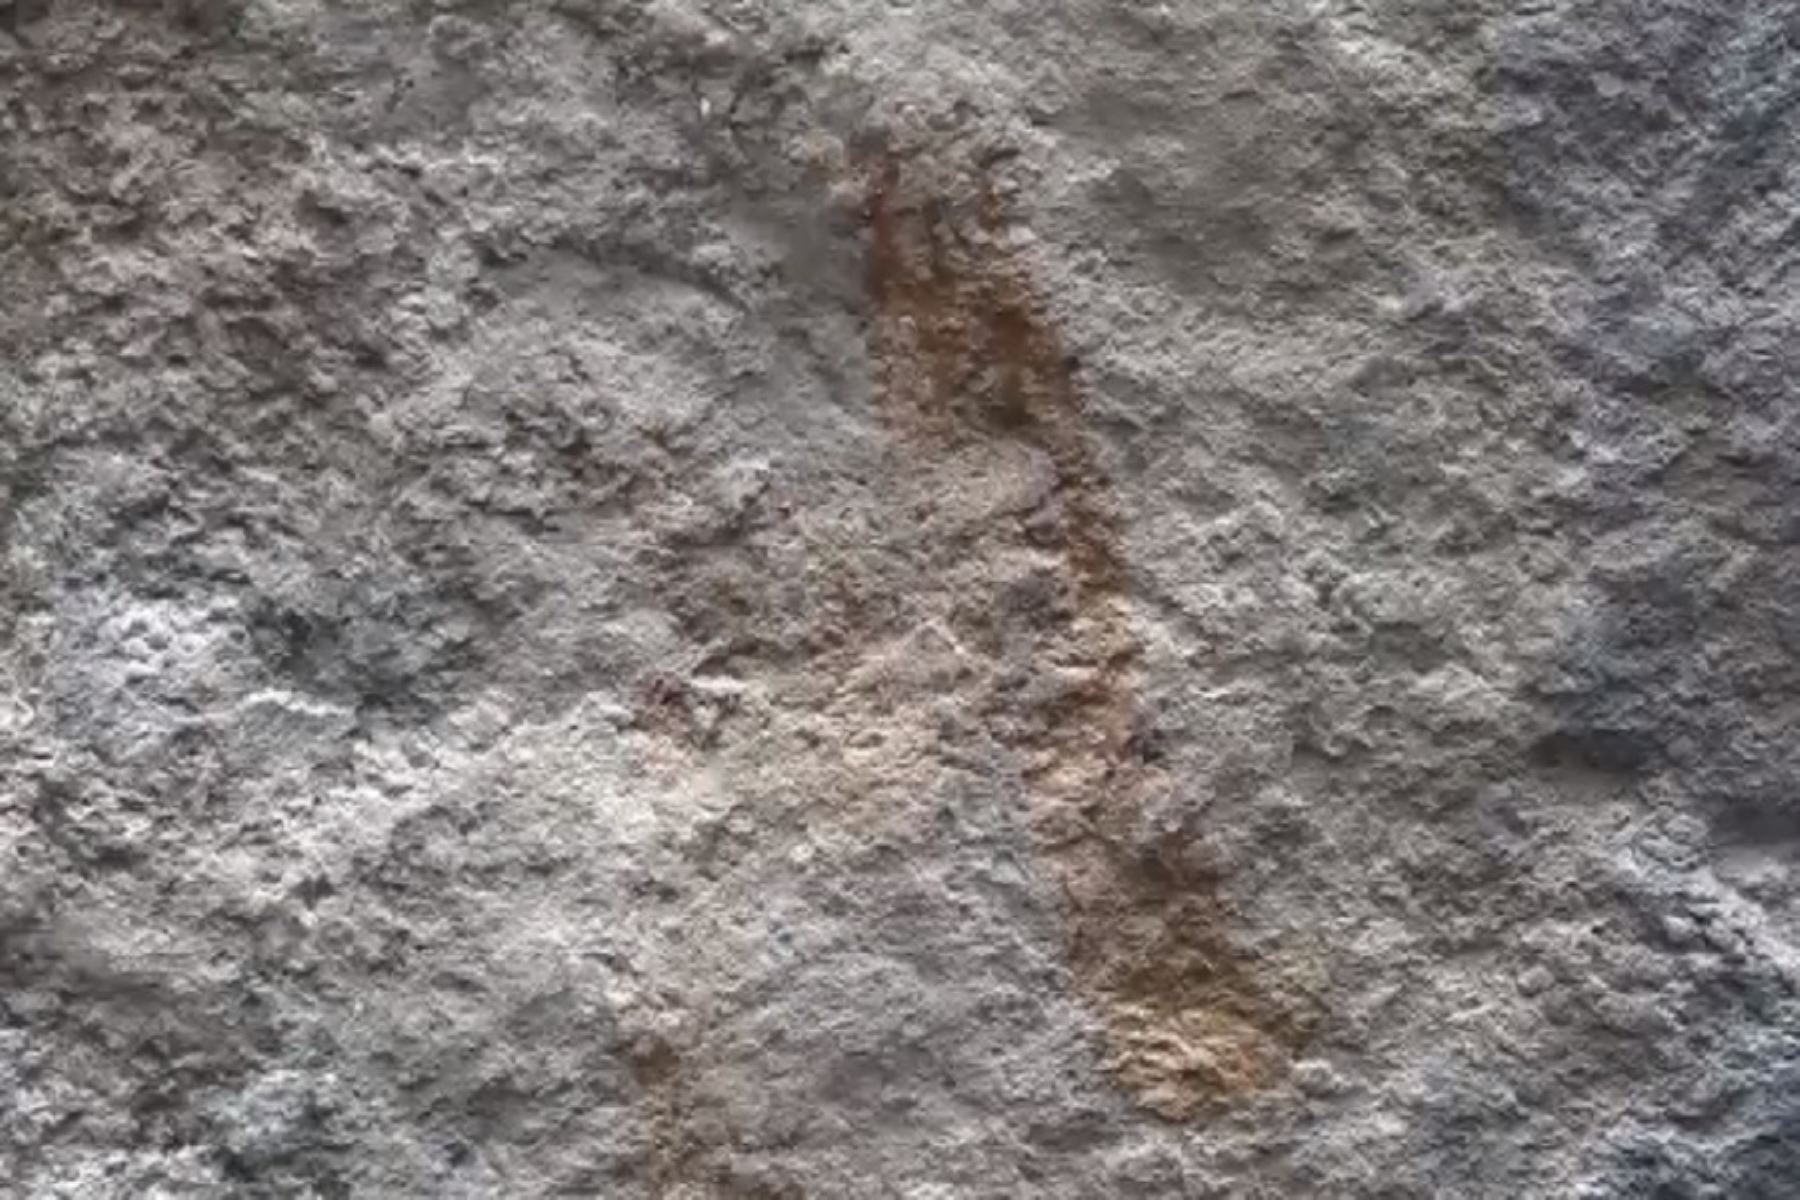 Arqueólogos de la Dirección Desconcentrada de Cultura de Cusco descubrieron muestras de arte rupestre en un sector del Qhapaq Ñan o Gran Camino Inca que atraviesa el Parque Arqueológico de Machu Picchu.